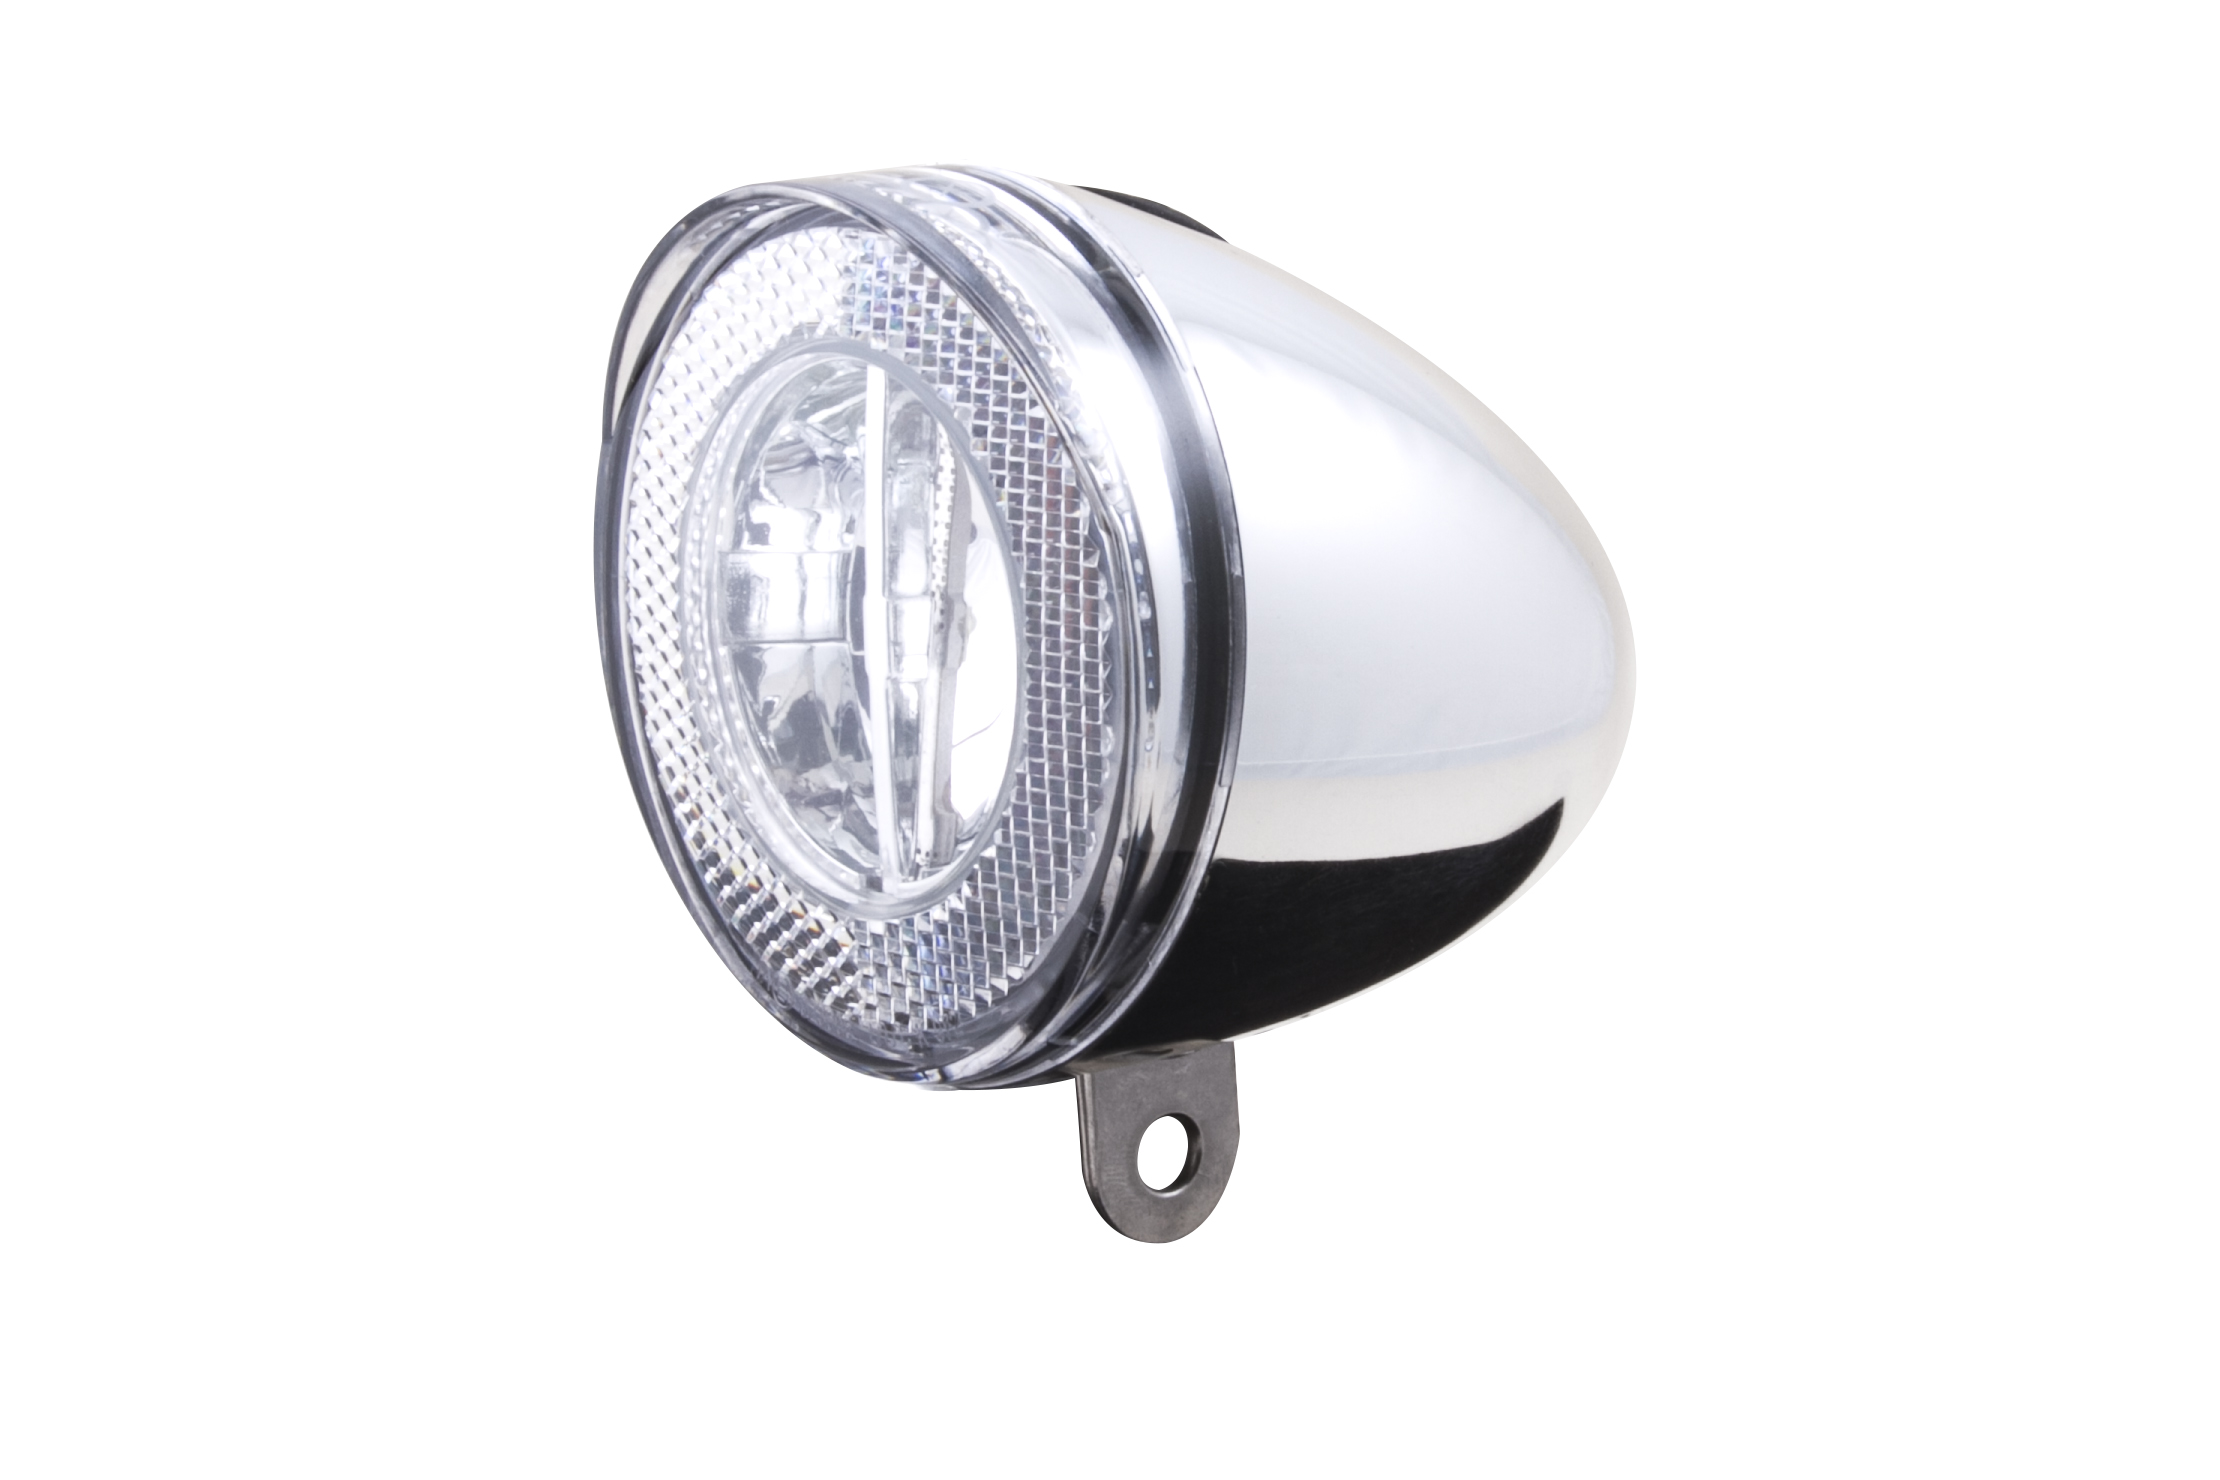 SWINGO LED headlight by Spanninga, chrome